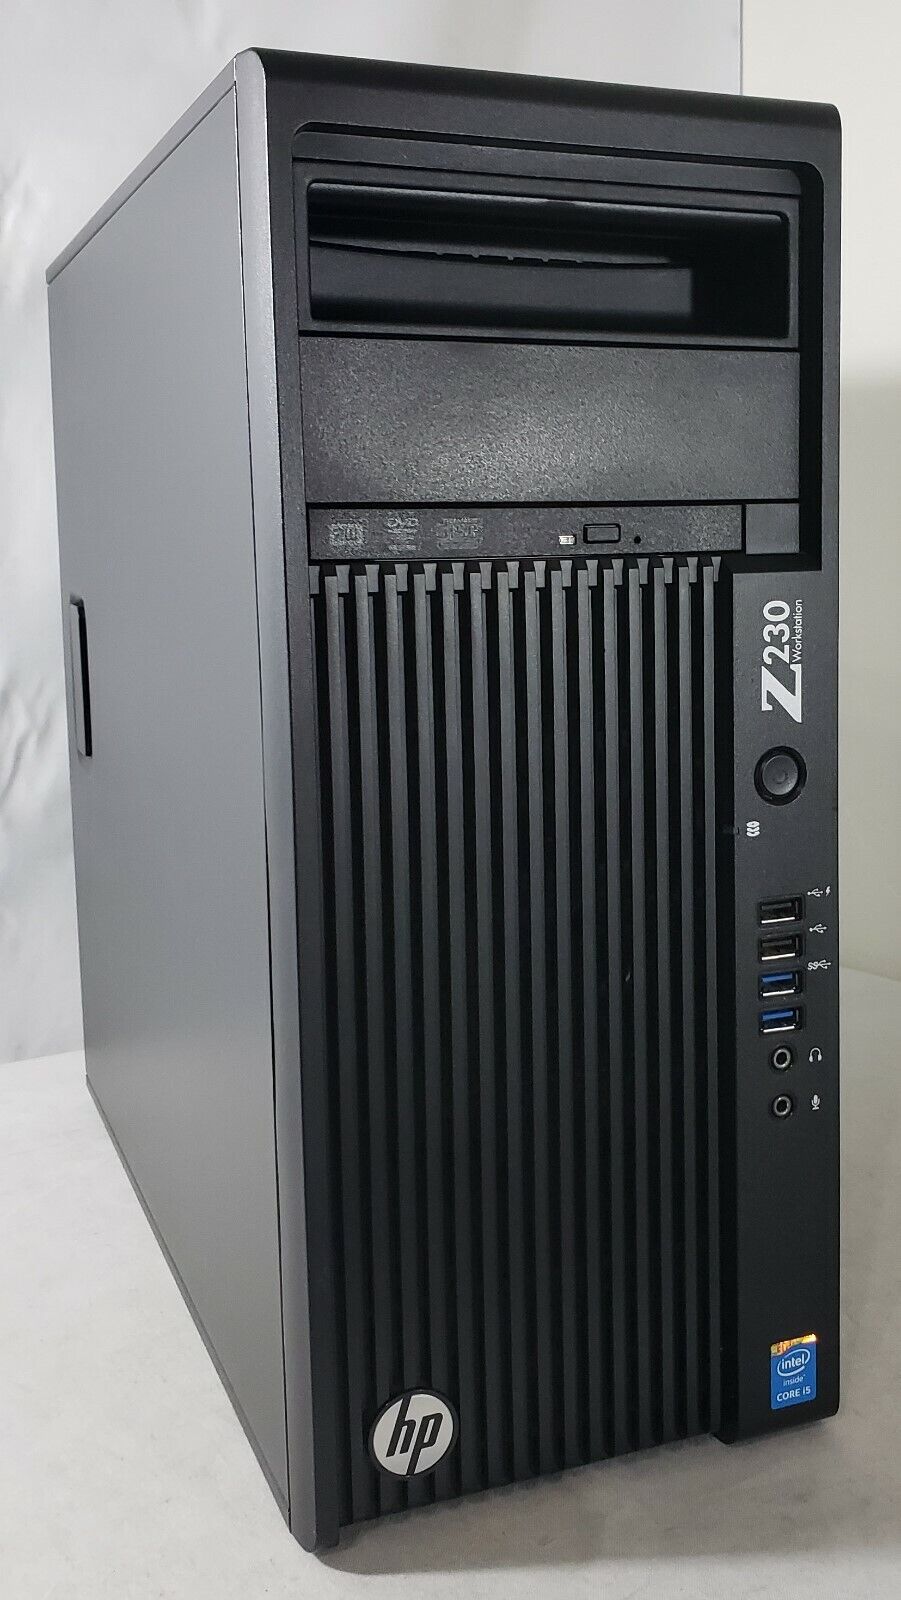 HP Z230 Tower PC Core i5-4690 CPU  3.50GHz 8GB RAM 1TB HDD WIN 10 Pro.